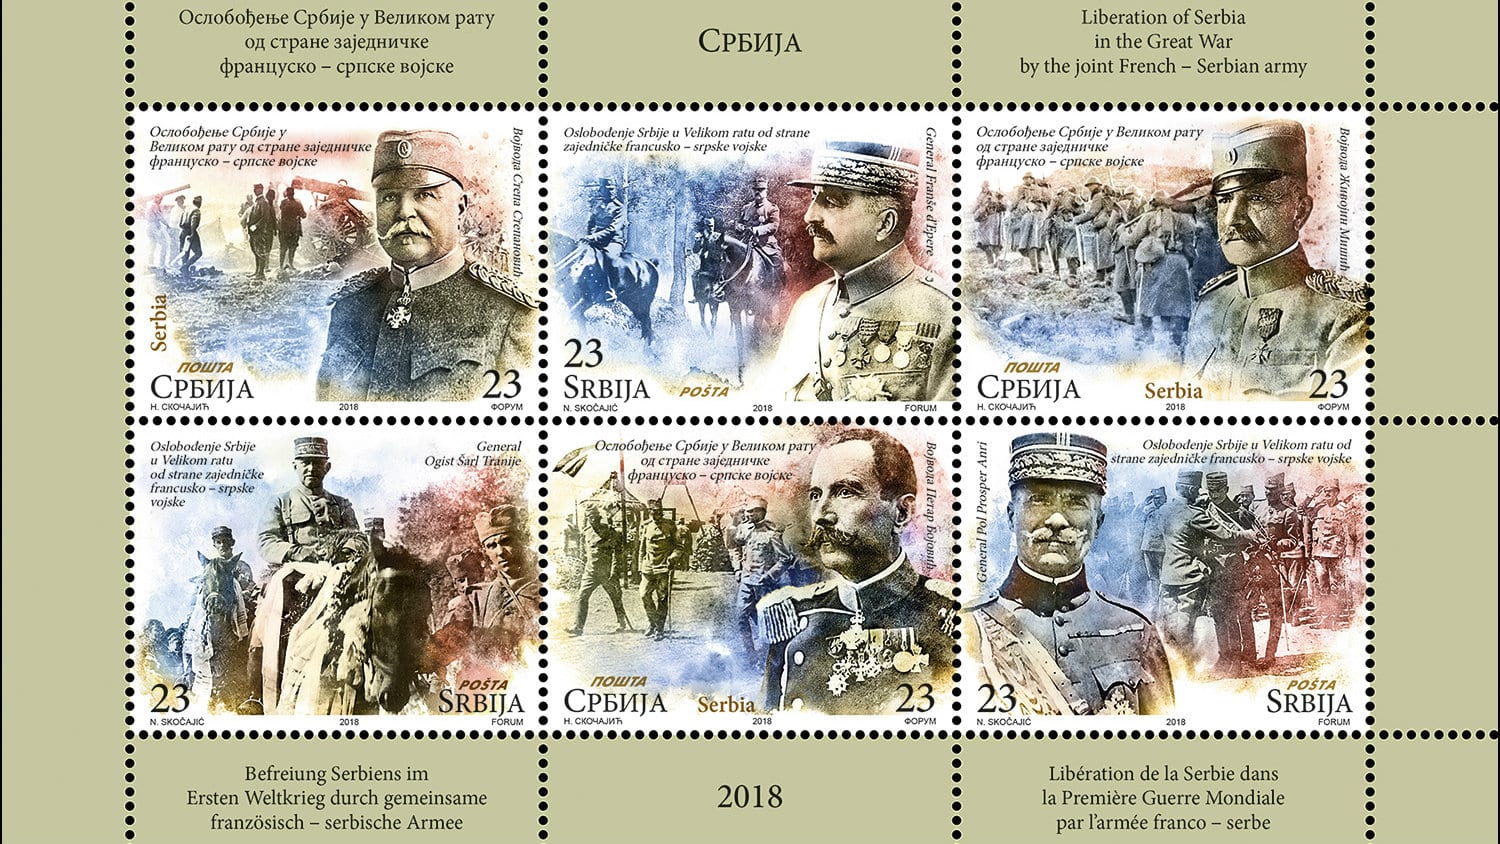 Poštanske marke povodom stogodišnjice oslobođenja u Velikom ratu (FOTO) 1